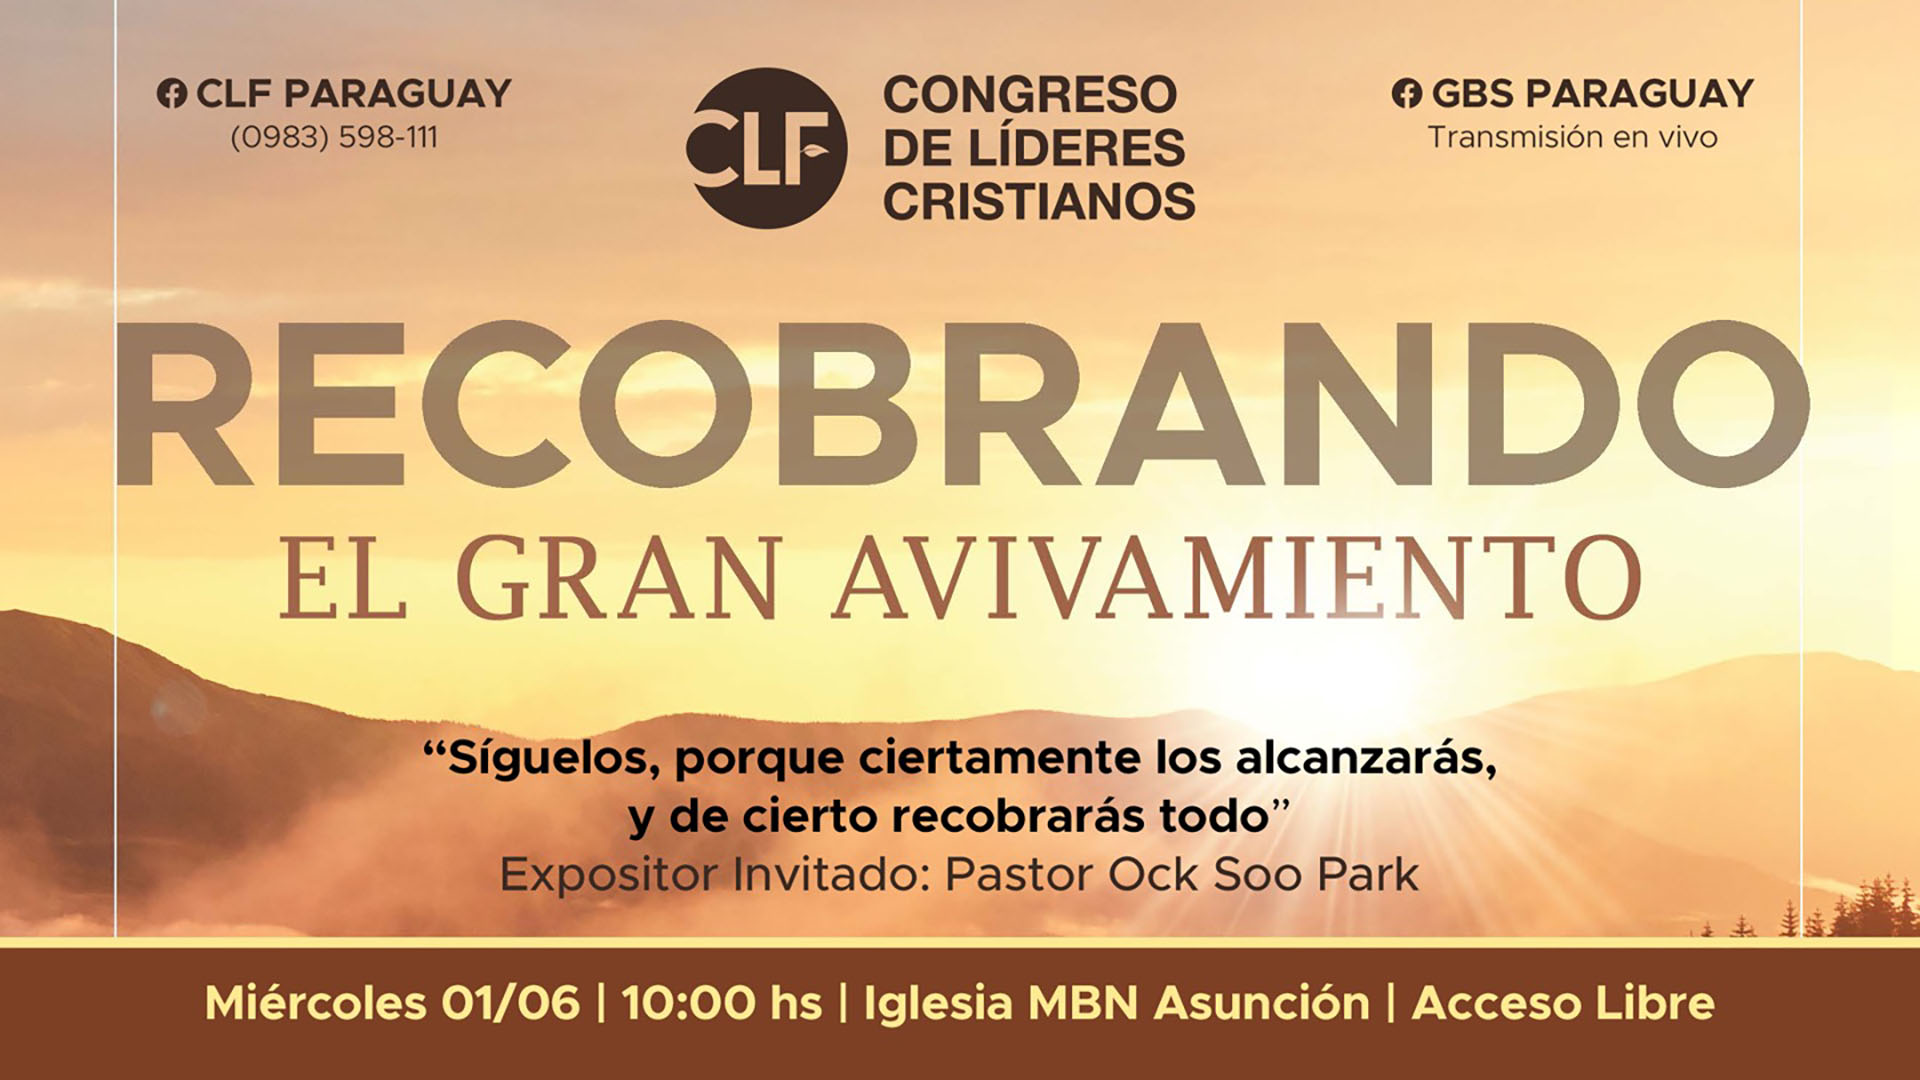 Paraguay] “CLF Paraguay” se realiza en Asunción de manera presencial con el  pastor Ock Soo Park￼ - Misión Buenas Nuevas